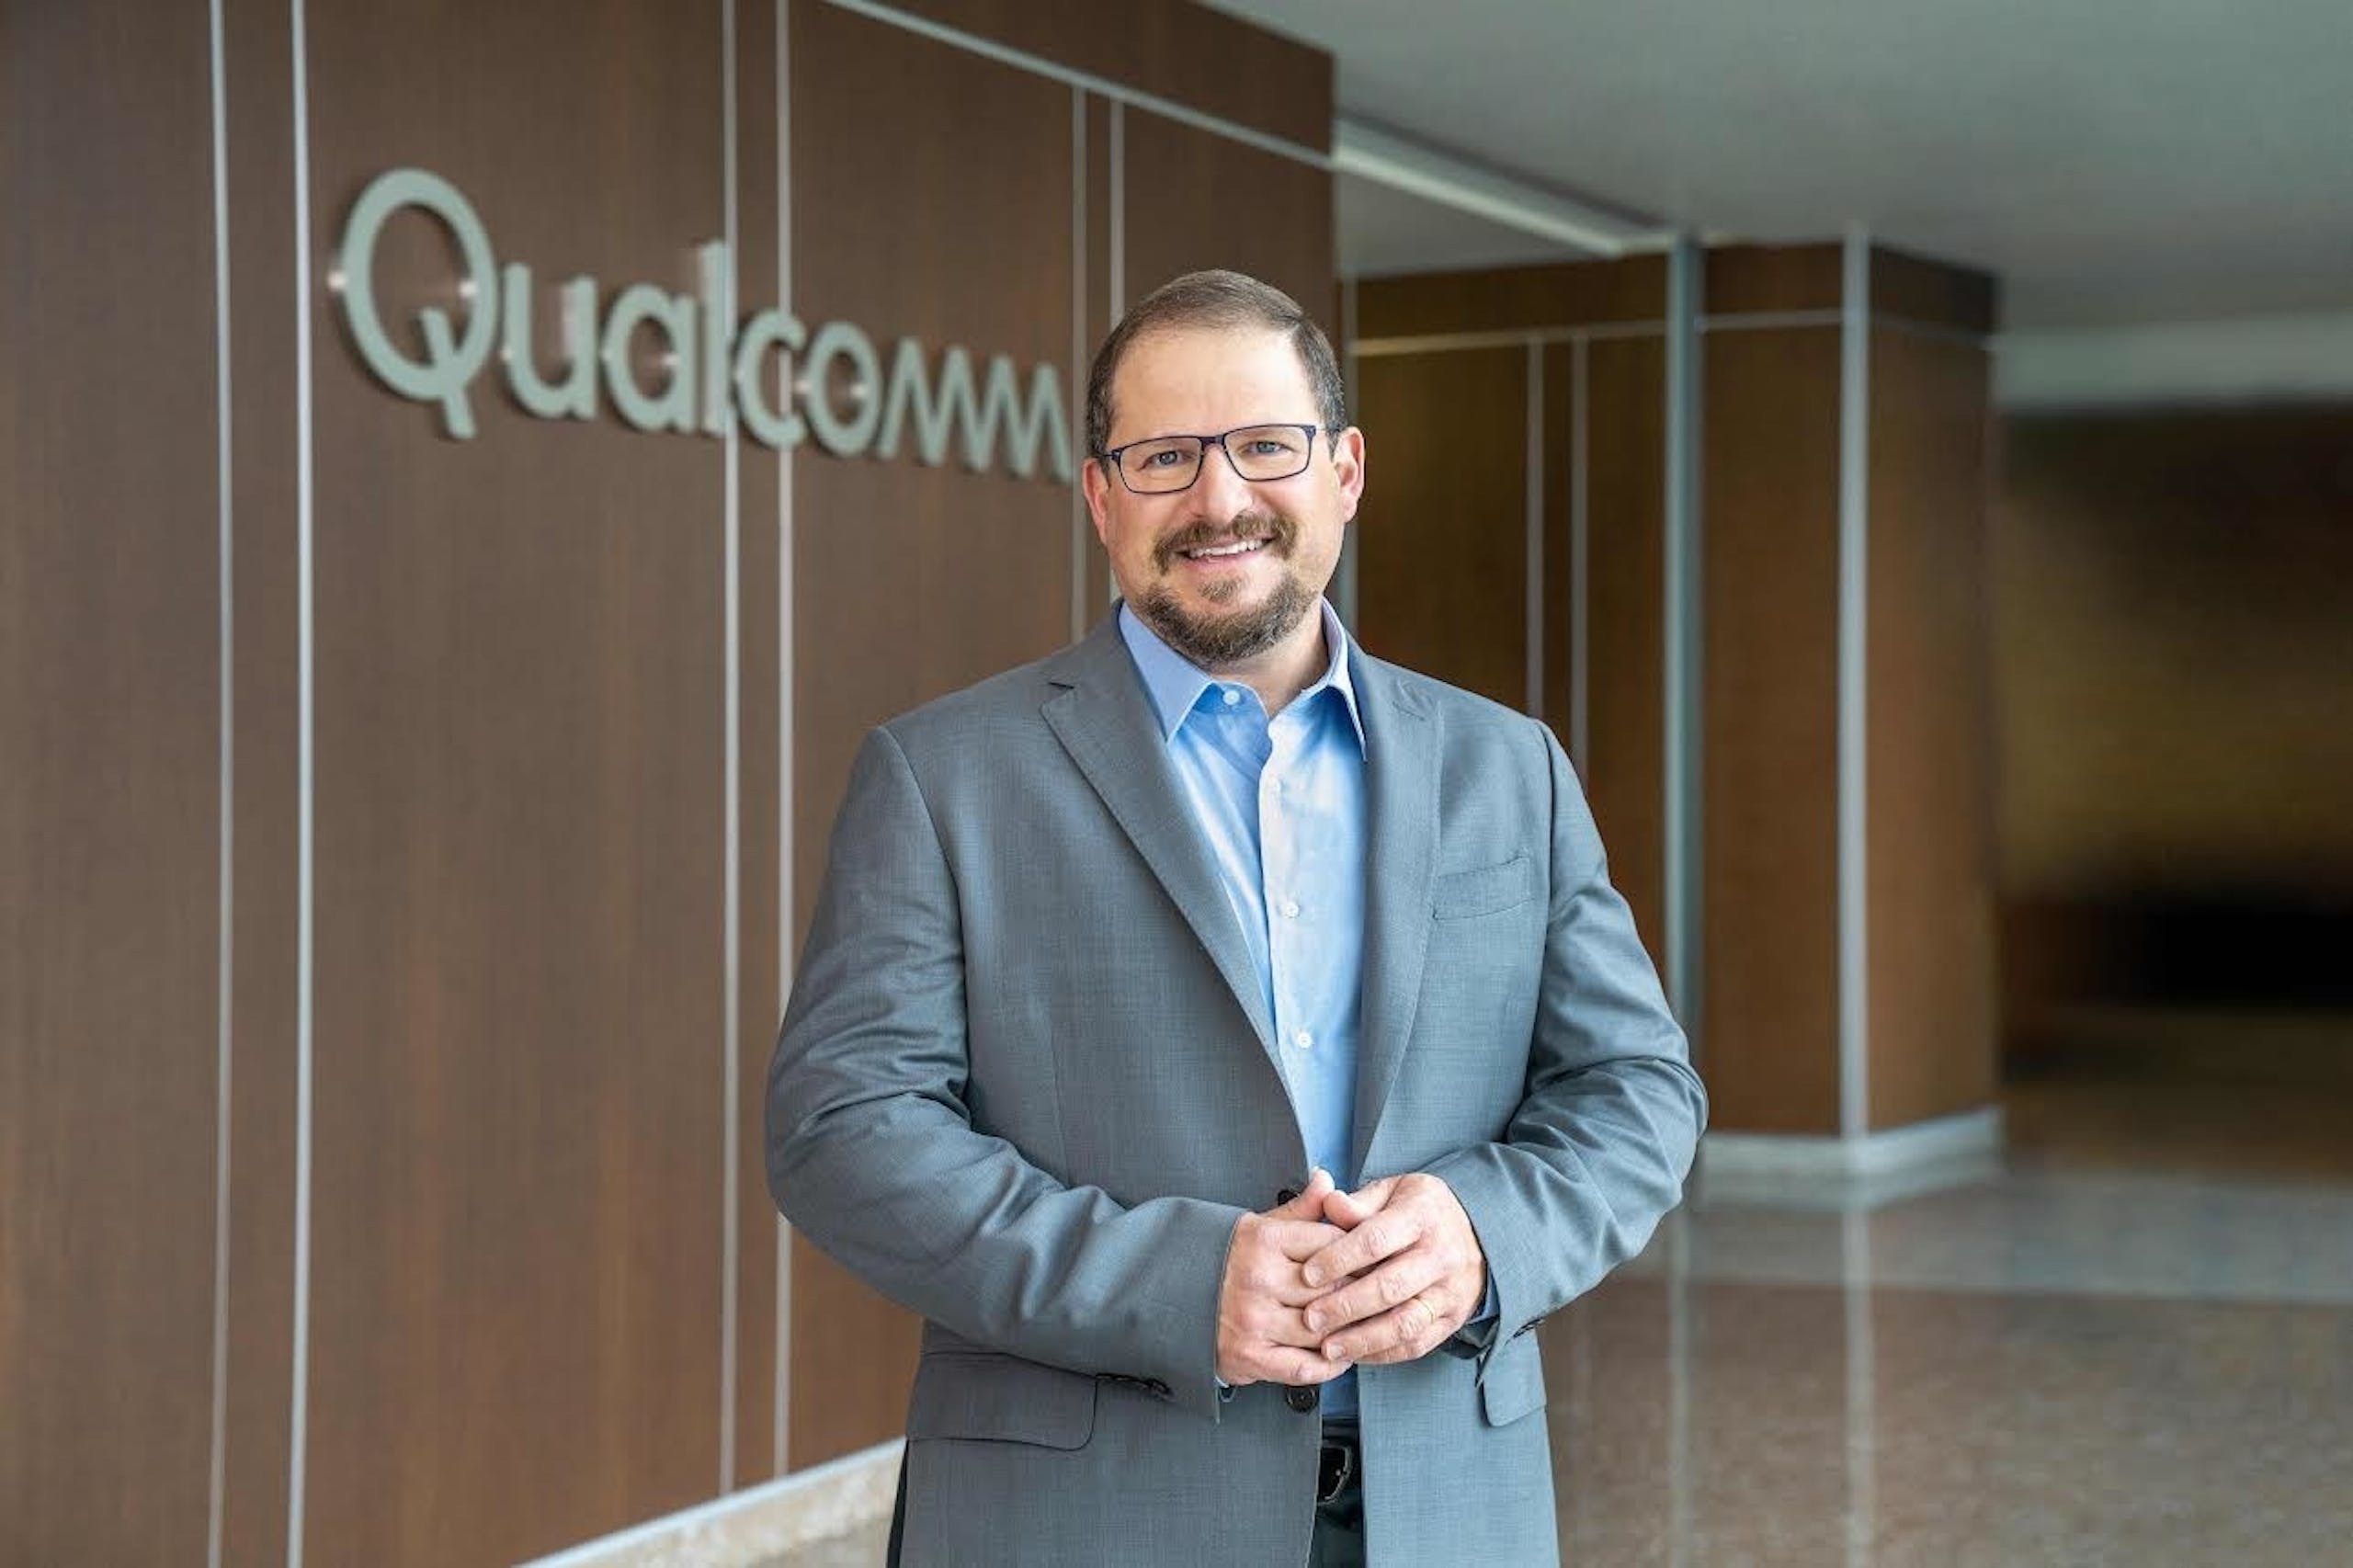 照片中提到了Qualçemm，跟高通公司有關，包含了高通首席執行官、克里斯蒂亞諾·阿蒙、常務董事、5G